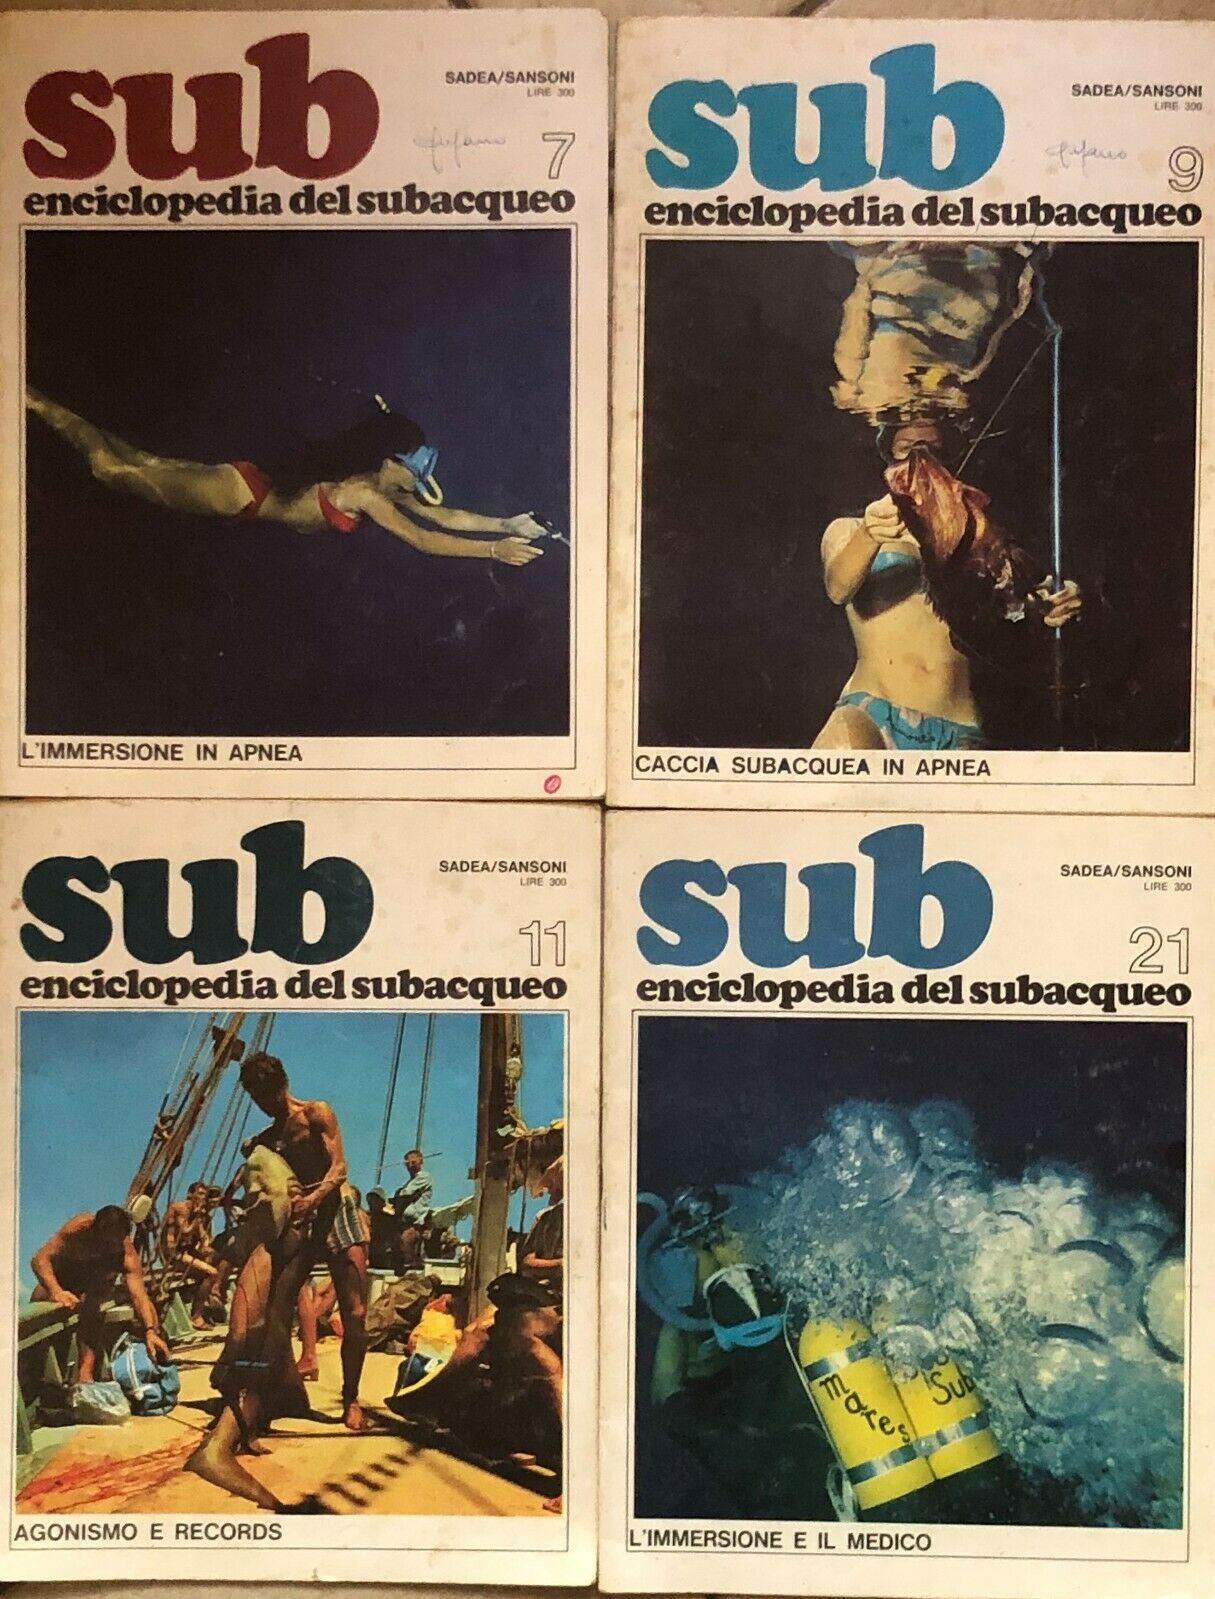 Sub, enciclopedia del subacqueo 7-9-11-21 di Aa.vv., 1968, Sadea/sansoni